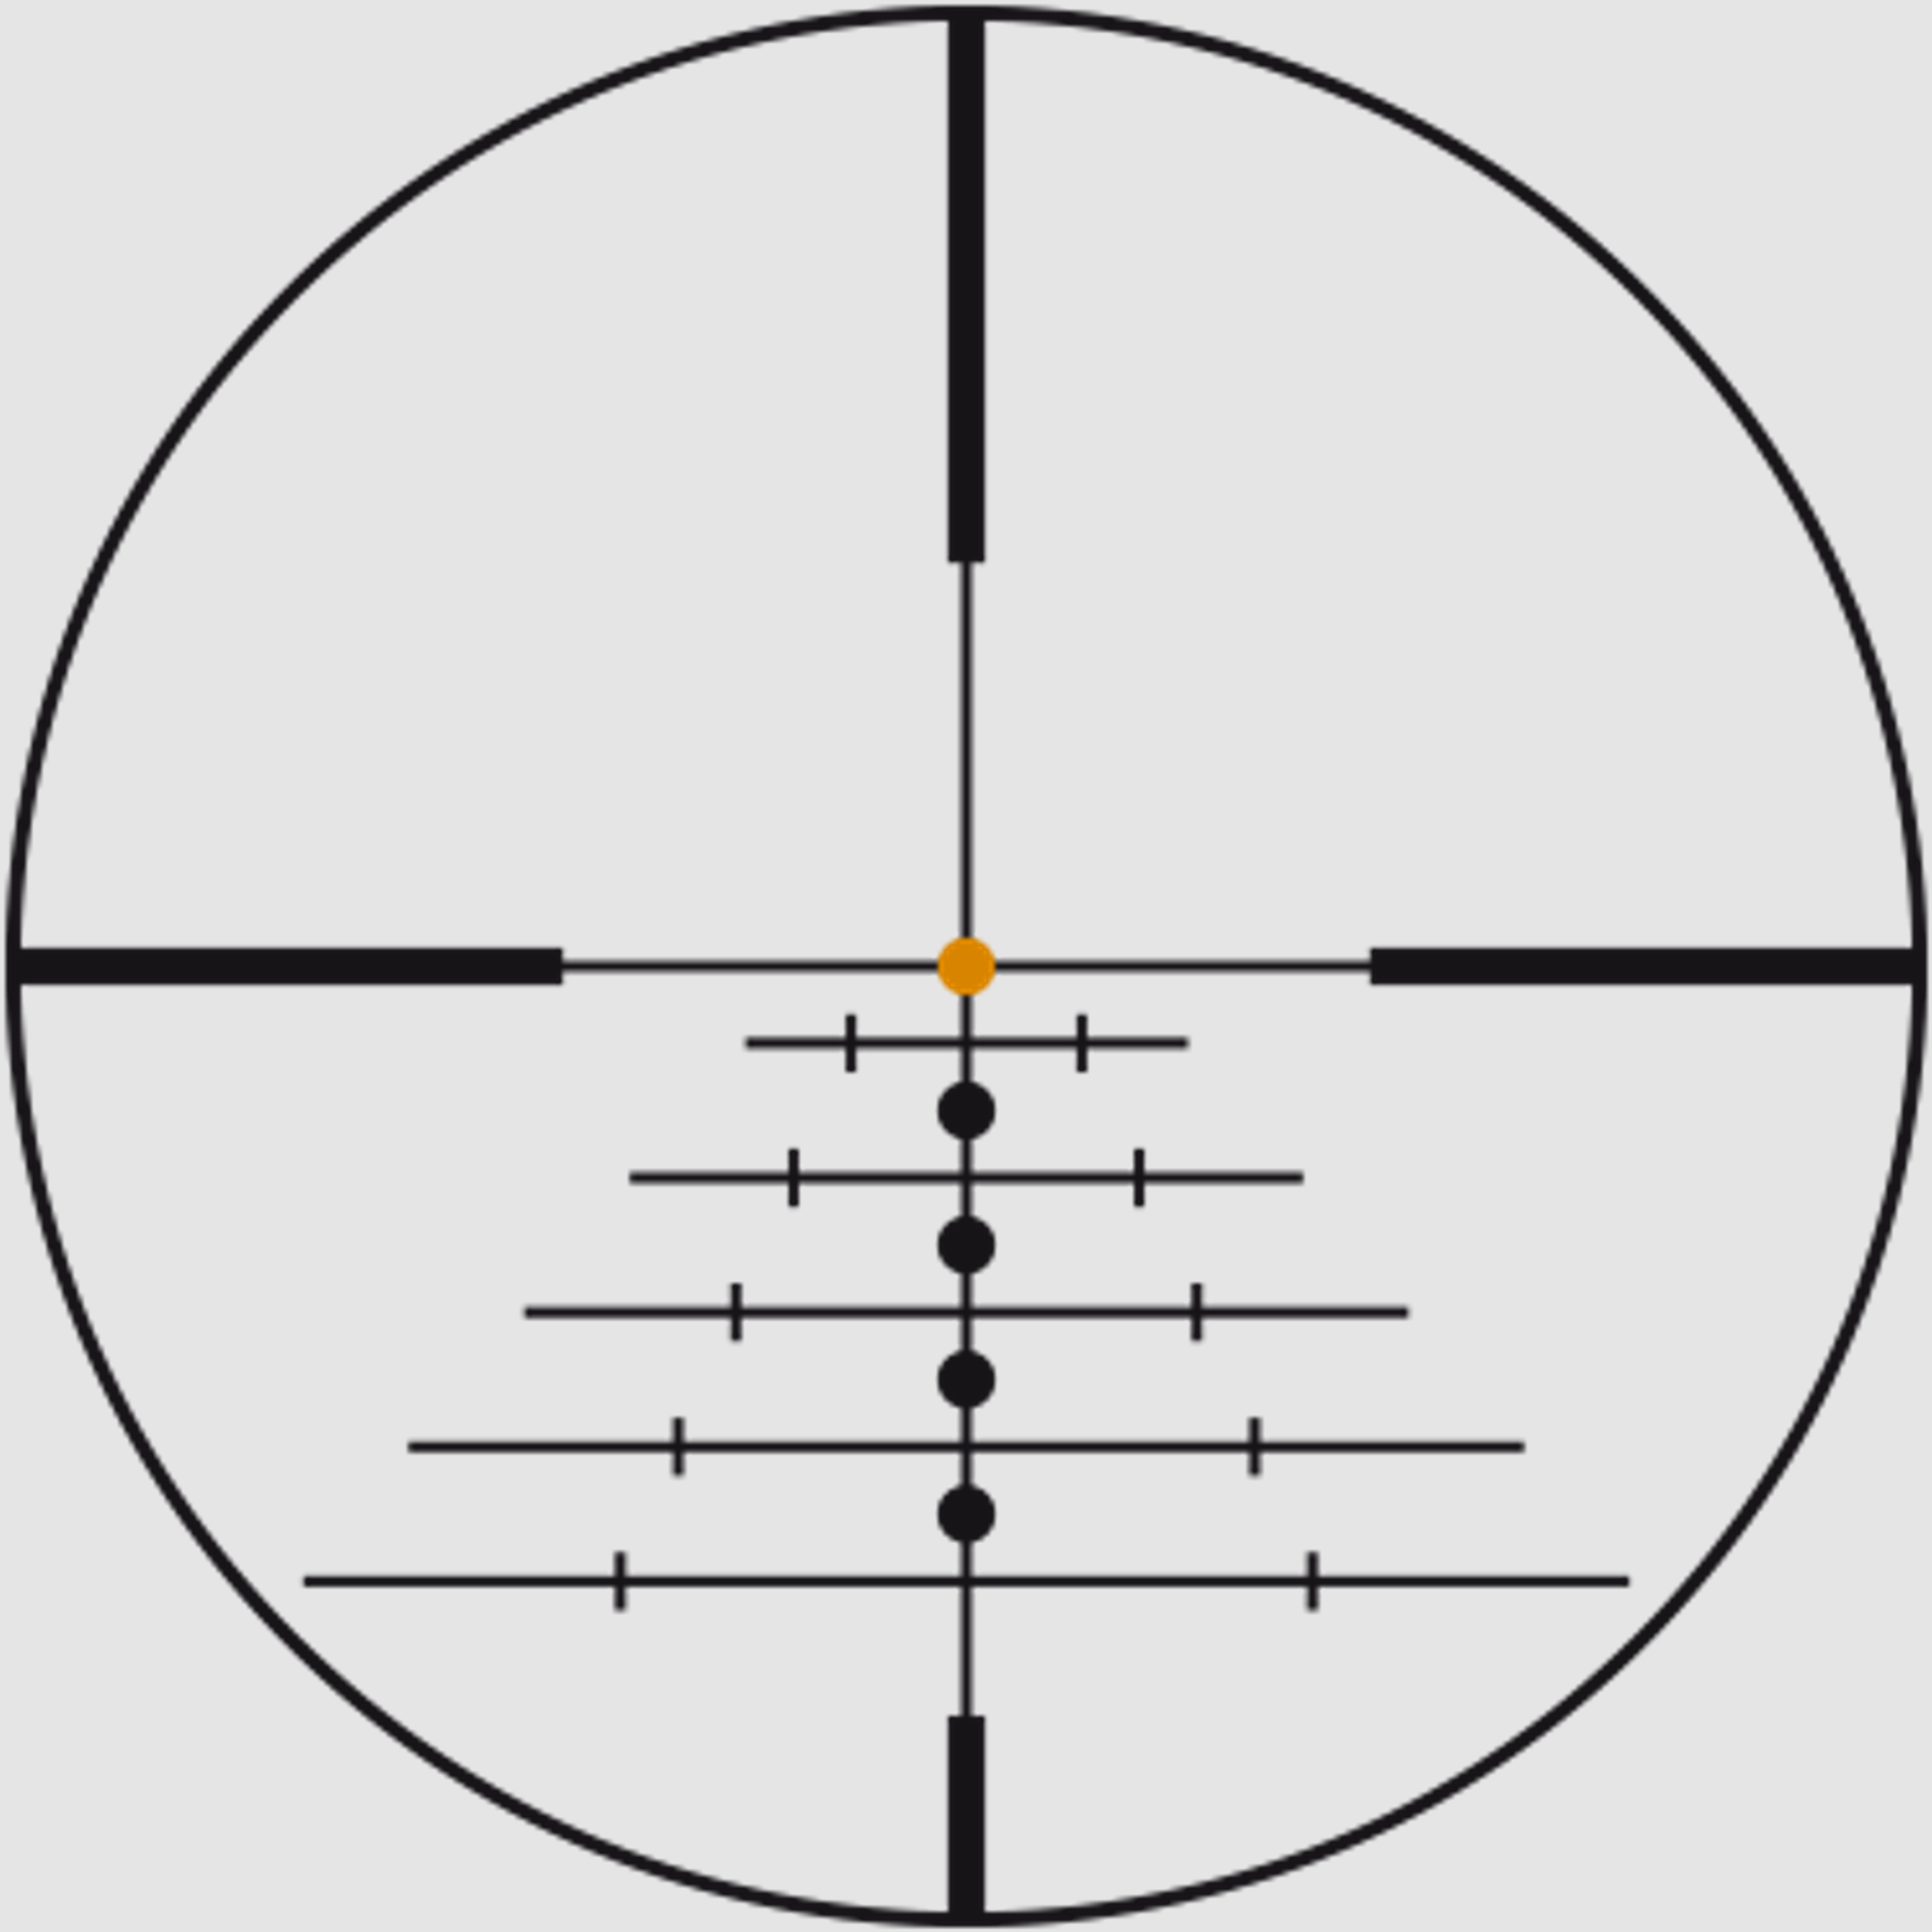 SWAROVSKI Zielfernrohr mit Leuchtabsehen 2-16x50 P Z8i L (30mm) Abs. 4A-I/4A-300I/BRX-I/4W-I